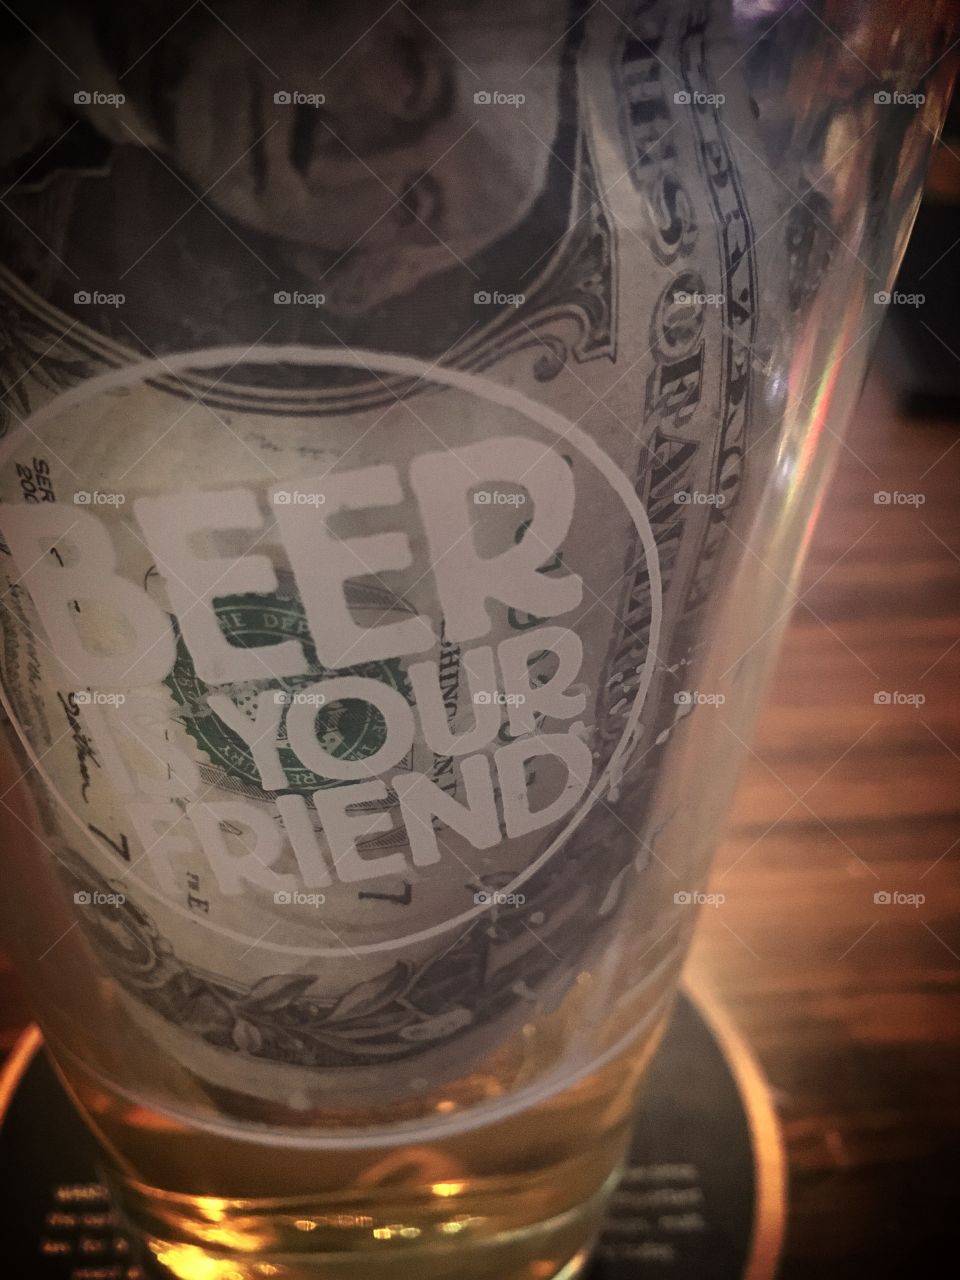 Beer is your friend